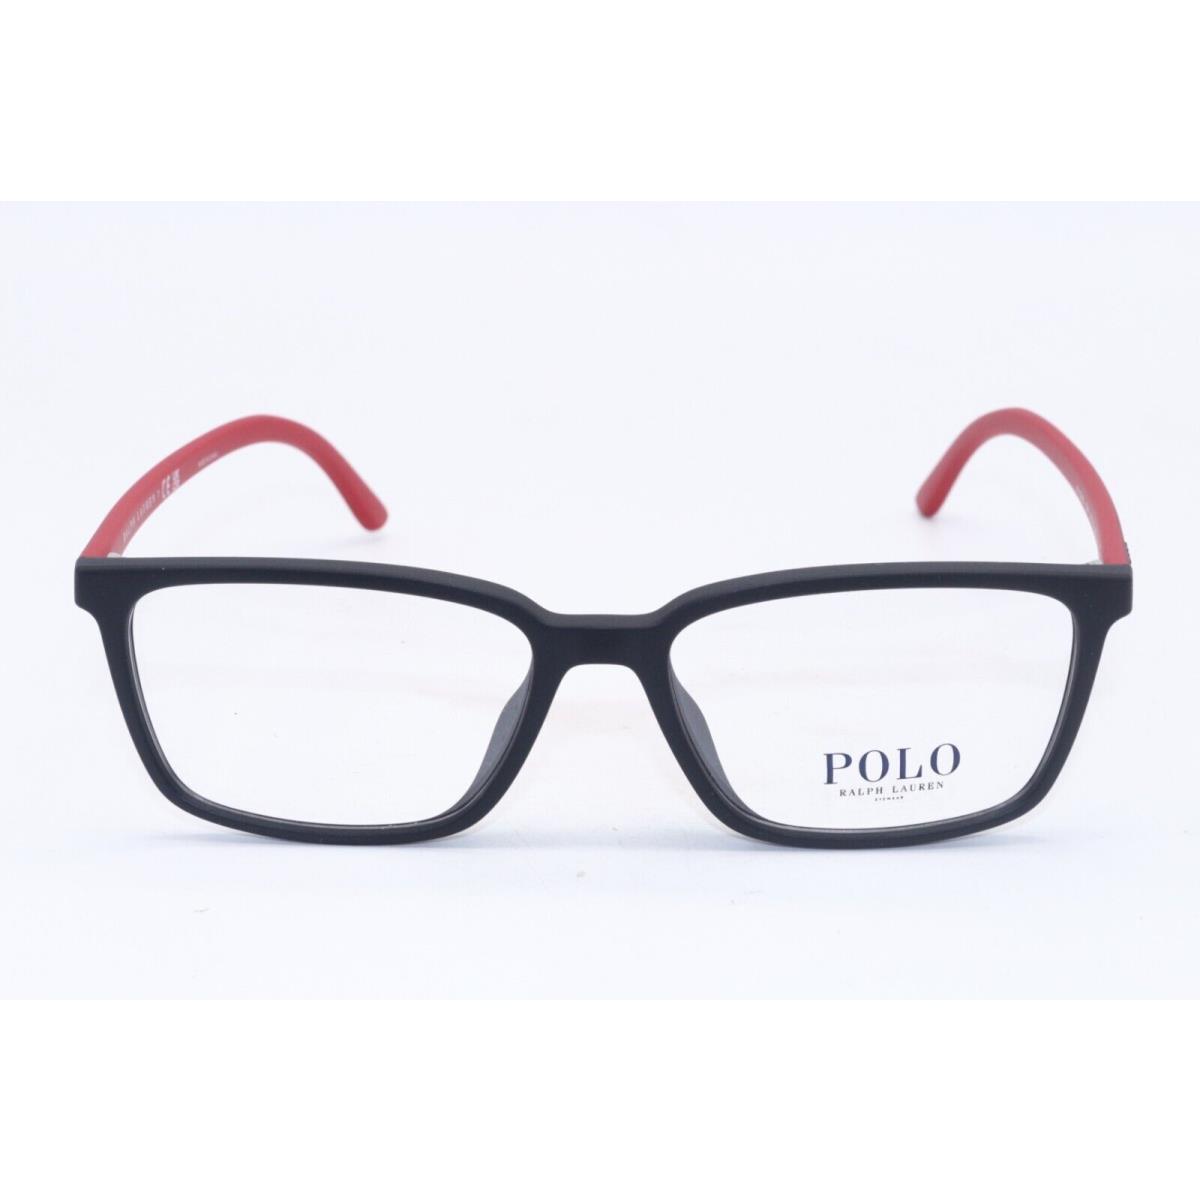 Ralph Lauren eyeglasses  - MATTE BLACK RED Frame